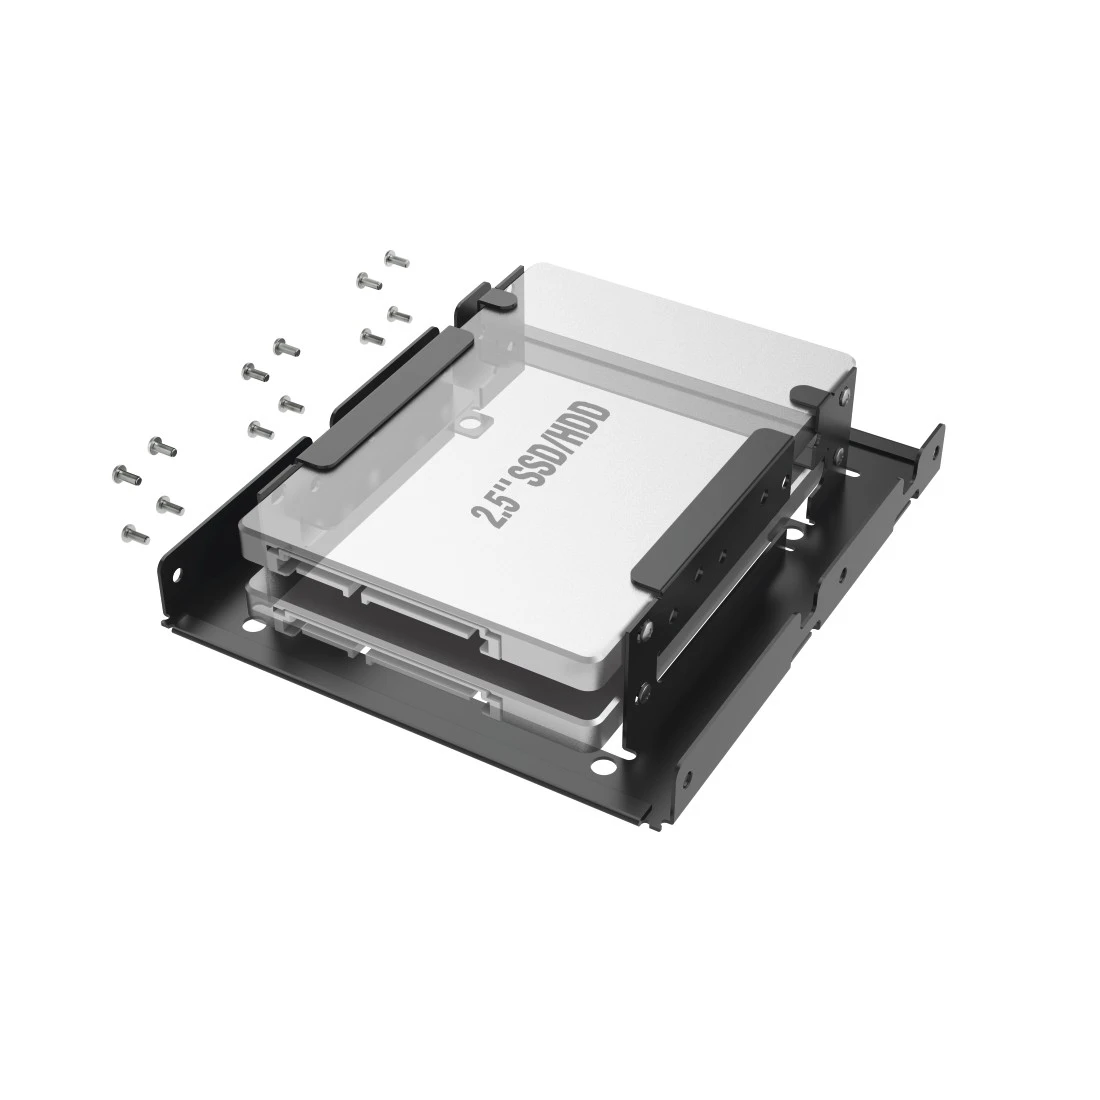 Einbaurahmen für 2x 2,5" SSD- und HDD-Festplatten in 3,5" Einschub | Hama